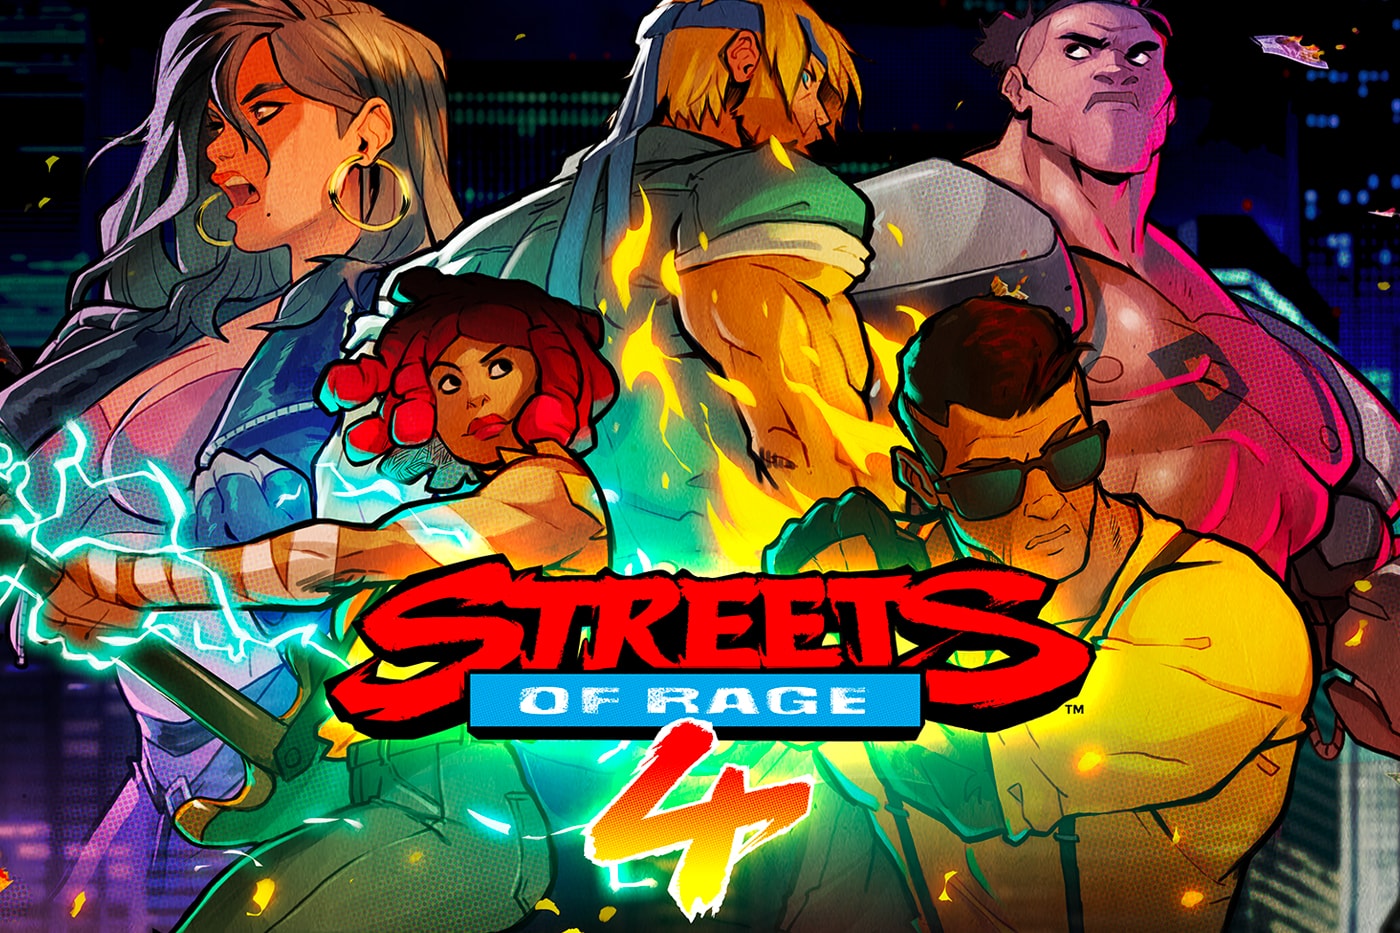 Streets of Rage 4 SEGA Genesis Packaging News gaming beat em up 1990s SEGA Genesis Dotemu gaming scrolling fighting nostalgia 